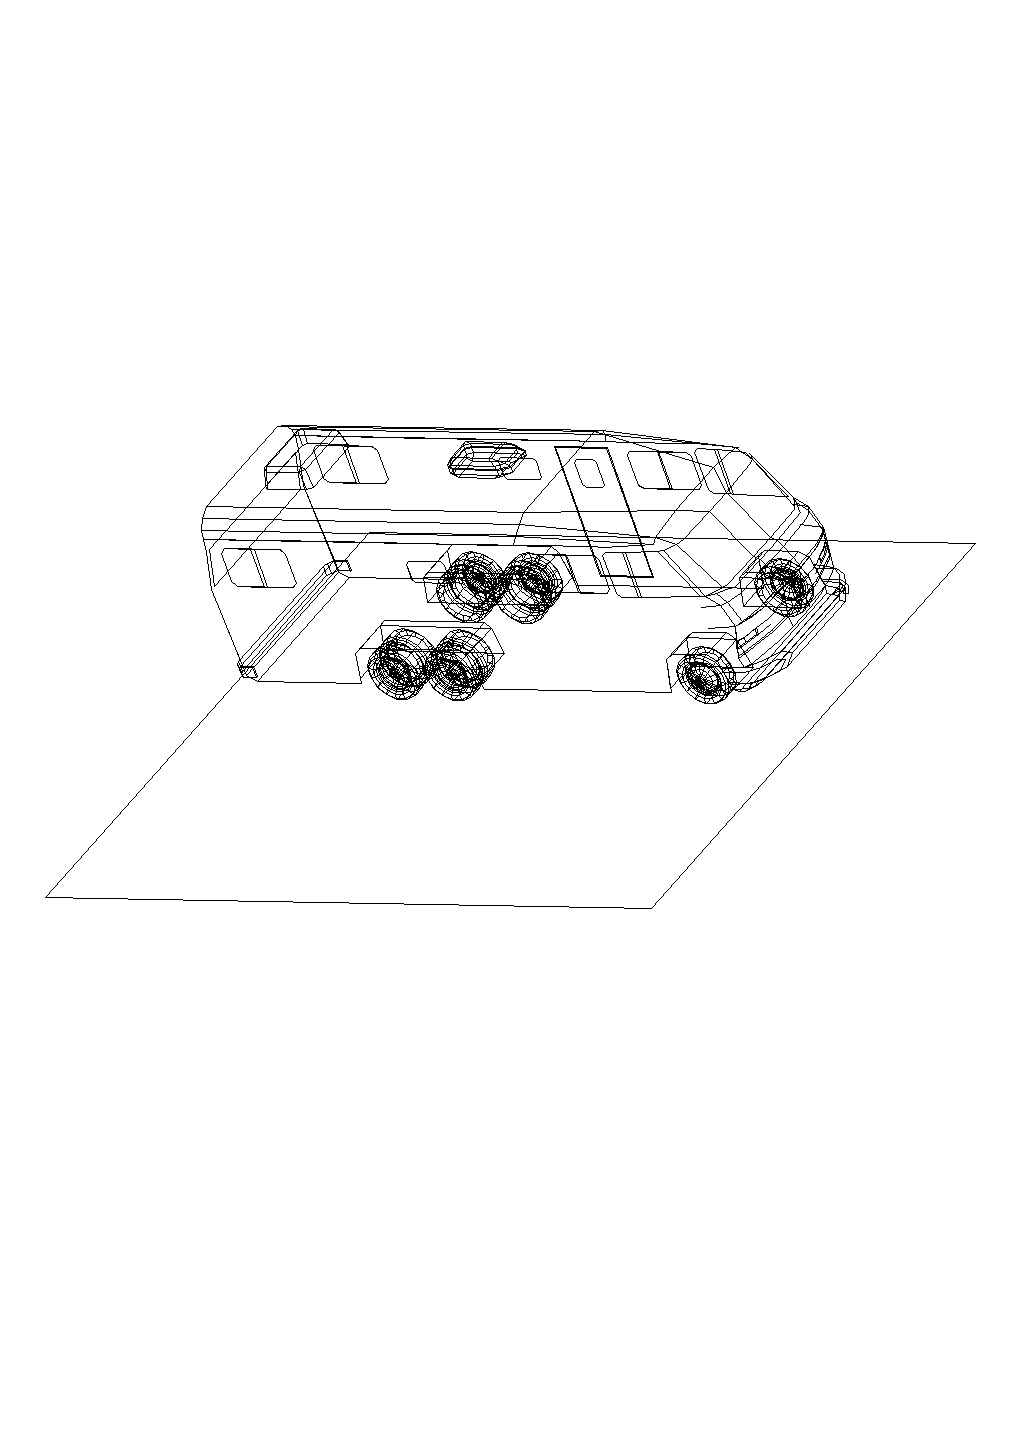 某汽车三维模型CAD详细构造平面图纸